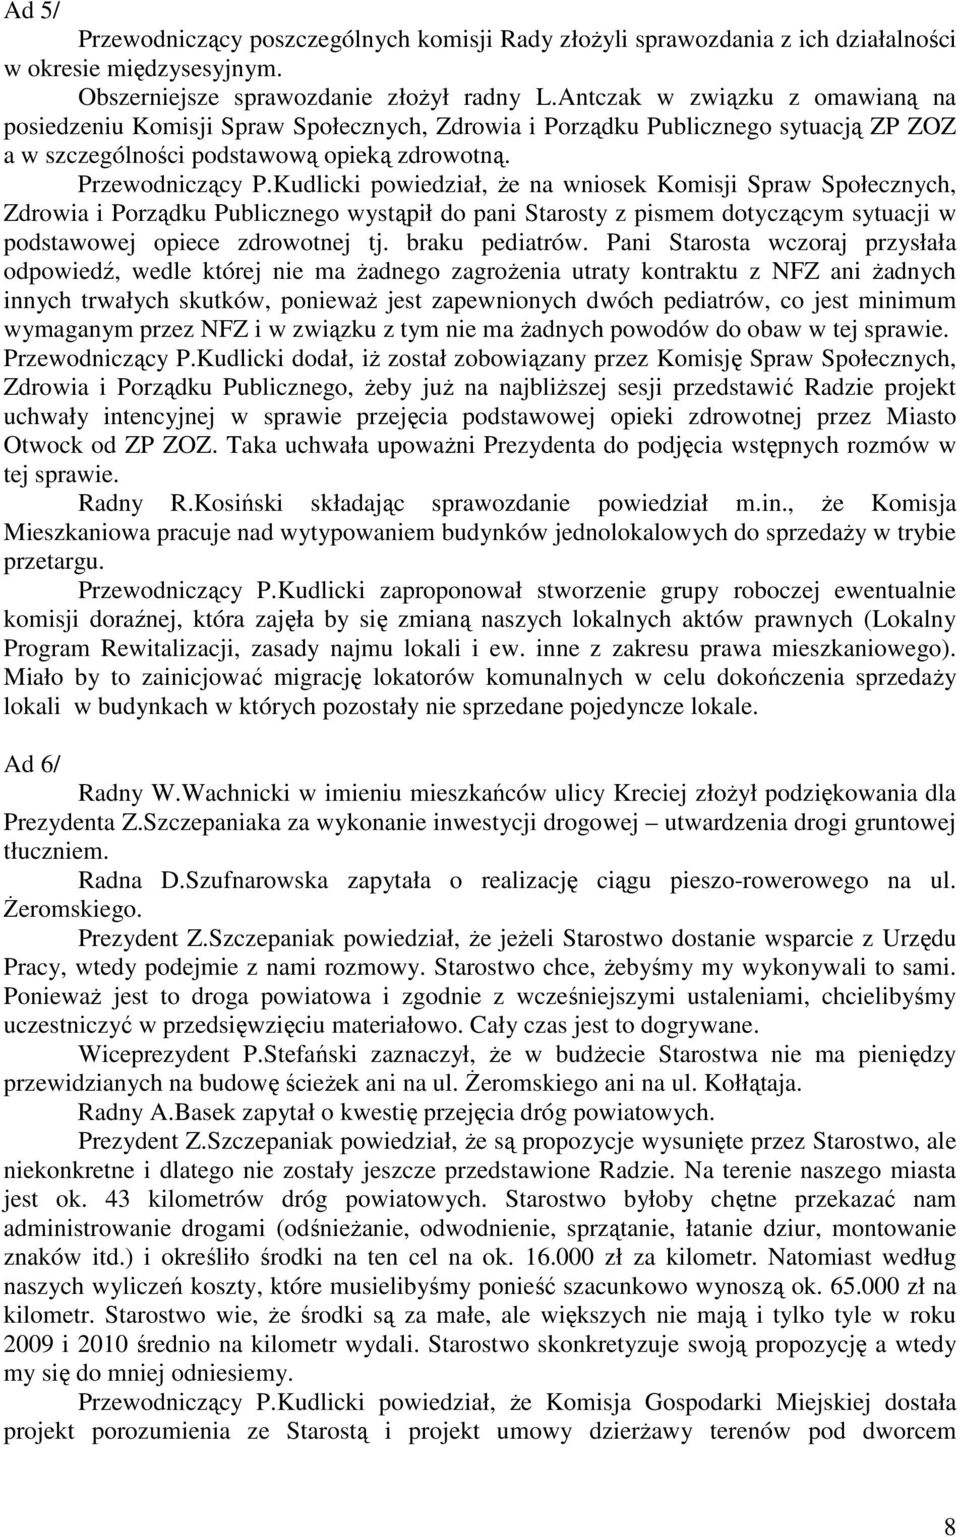 Kudlicki powiedział, że na wniosek Komisji Spraw Społecznych, Zdrowia i Porządku Publicznego wystąpił do pani Starosty z pismem dotyczącym sytuacji w podstawowej opiece zdrowotnej tj. braku pediatrów.